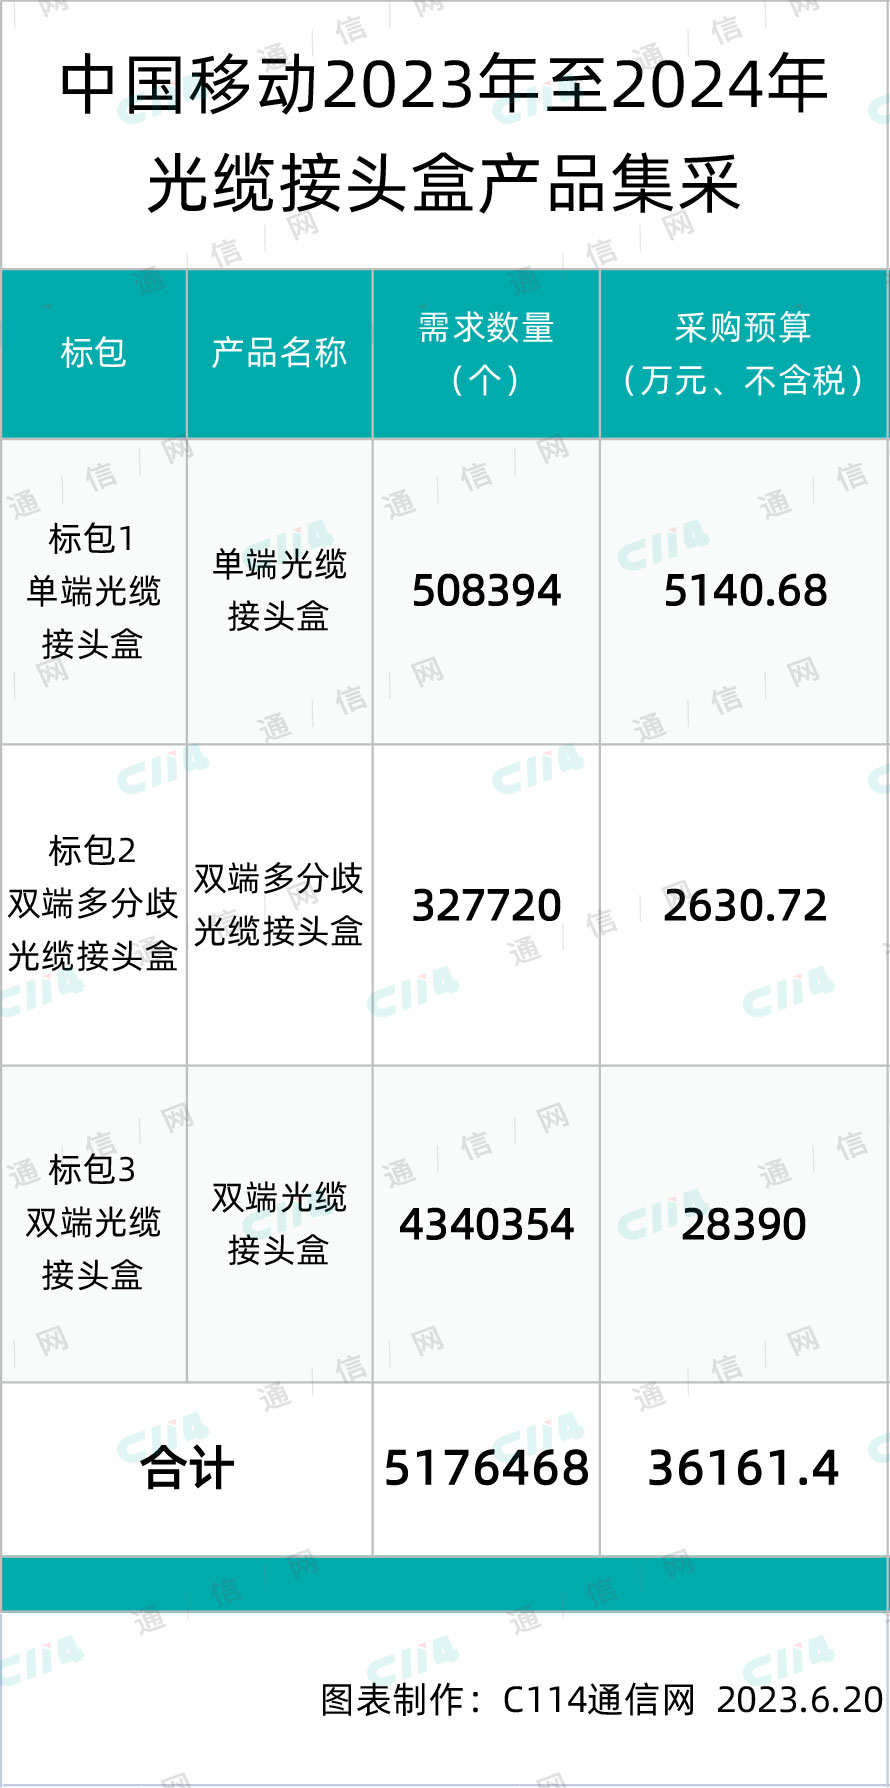 中国移动启动光缆接头盒产品集采，总预算36161.4万元